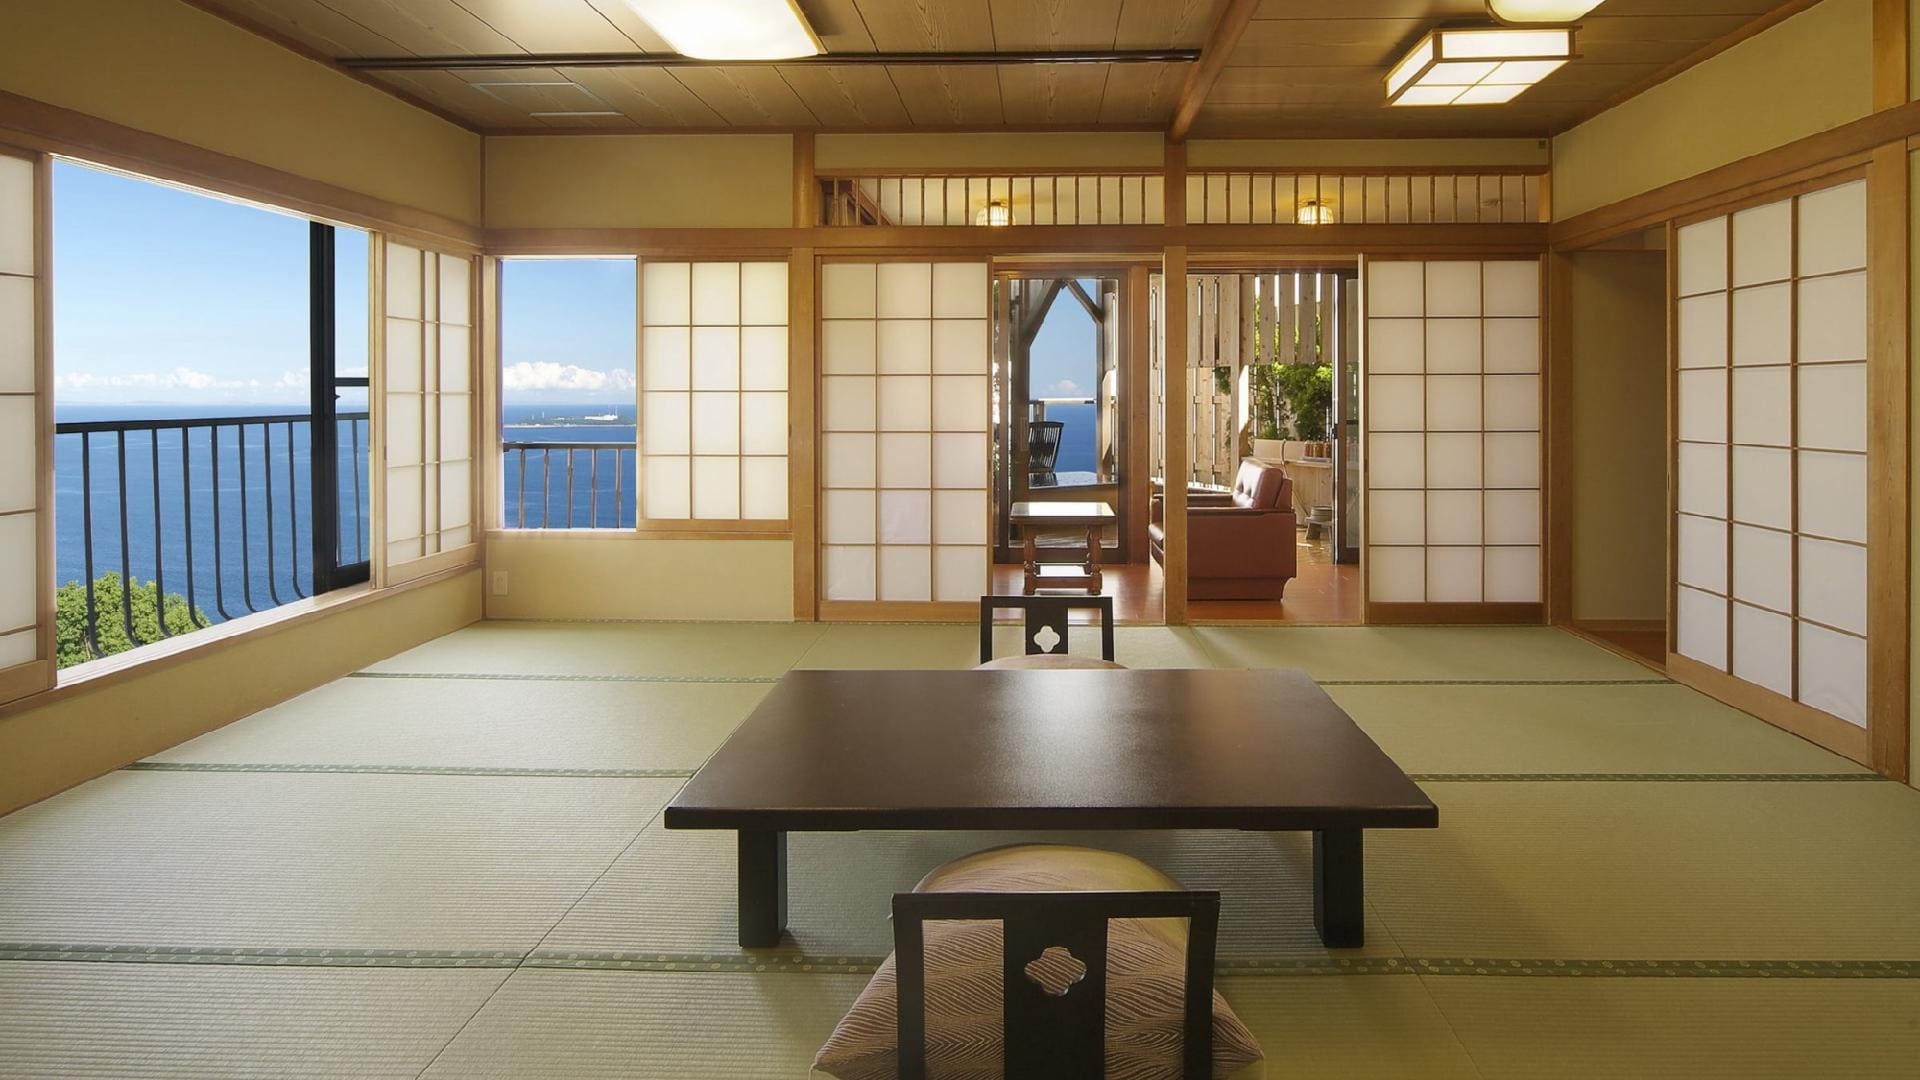 [ห้องสไตล์ญี่ปุ่นที่ผ่อนคลาย] Hatsushima ชั้น 1 15 เสื่อทาทามิ ห้องสไตล์ญี่ปุ่น + ห้องส่วนตัวพร้อมอ่างอาบน้ำกลางแจ้ง (อนุญาตให้เด็ก)